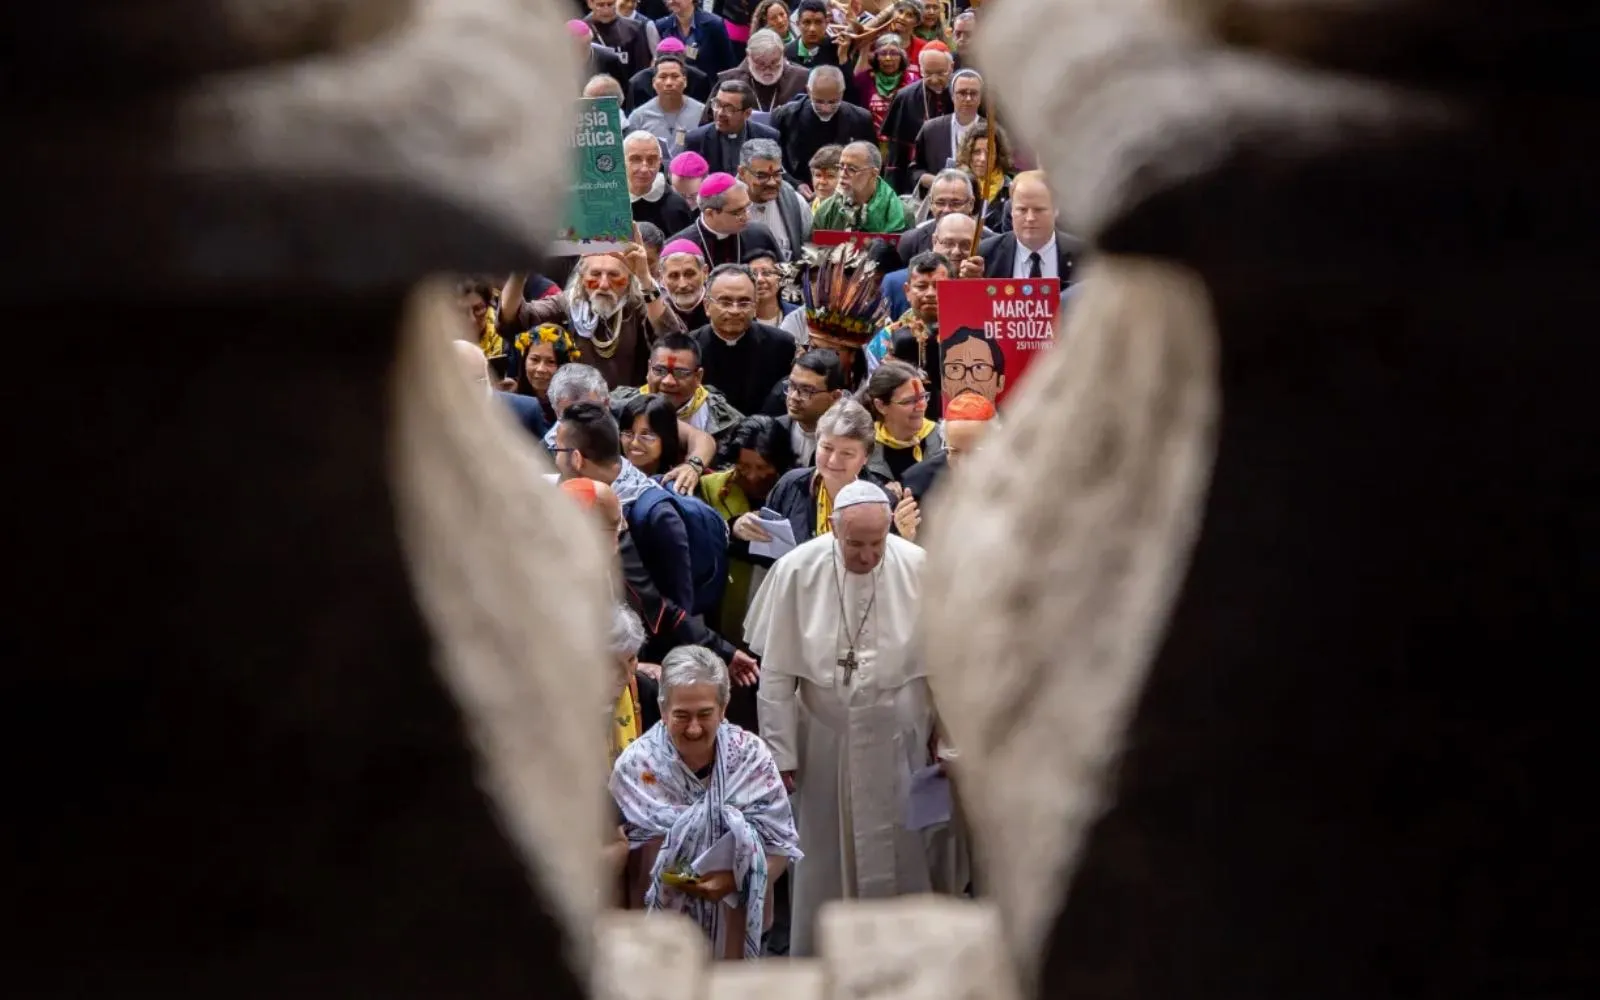 El Papa Francisco encabeza la procesión de apertura del Sínodo de la Amazonía desde la Basílica de San Pedro hasta el Aula del Sínodo, donde dirigió la oración de apertura, el 7 de octubre de 2019.?w=200&h=150